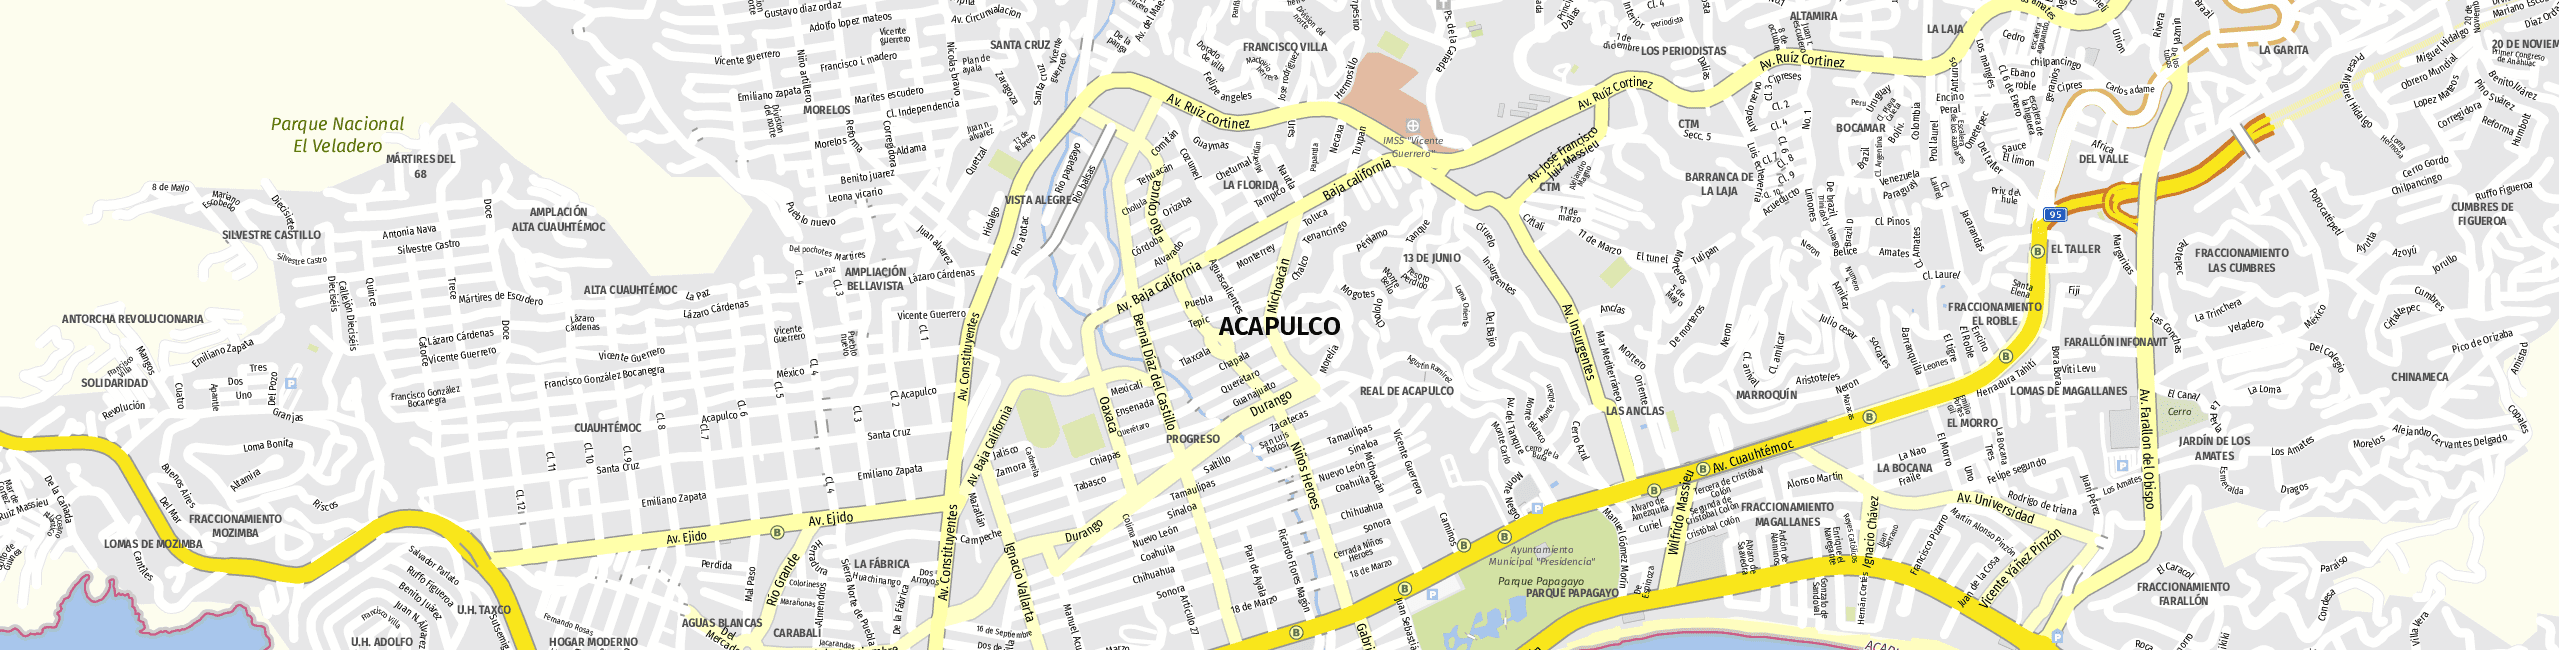 Stadtplan Acapulco de Juárez zum Downloaden.